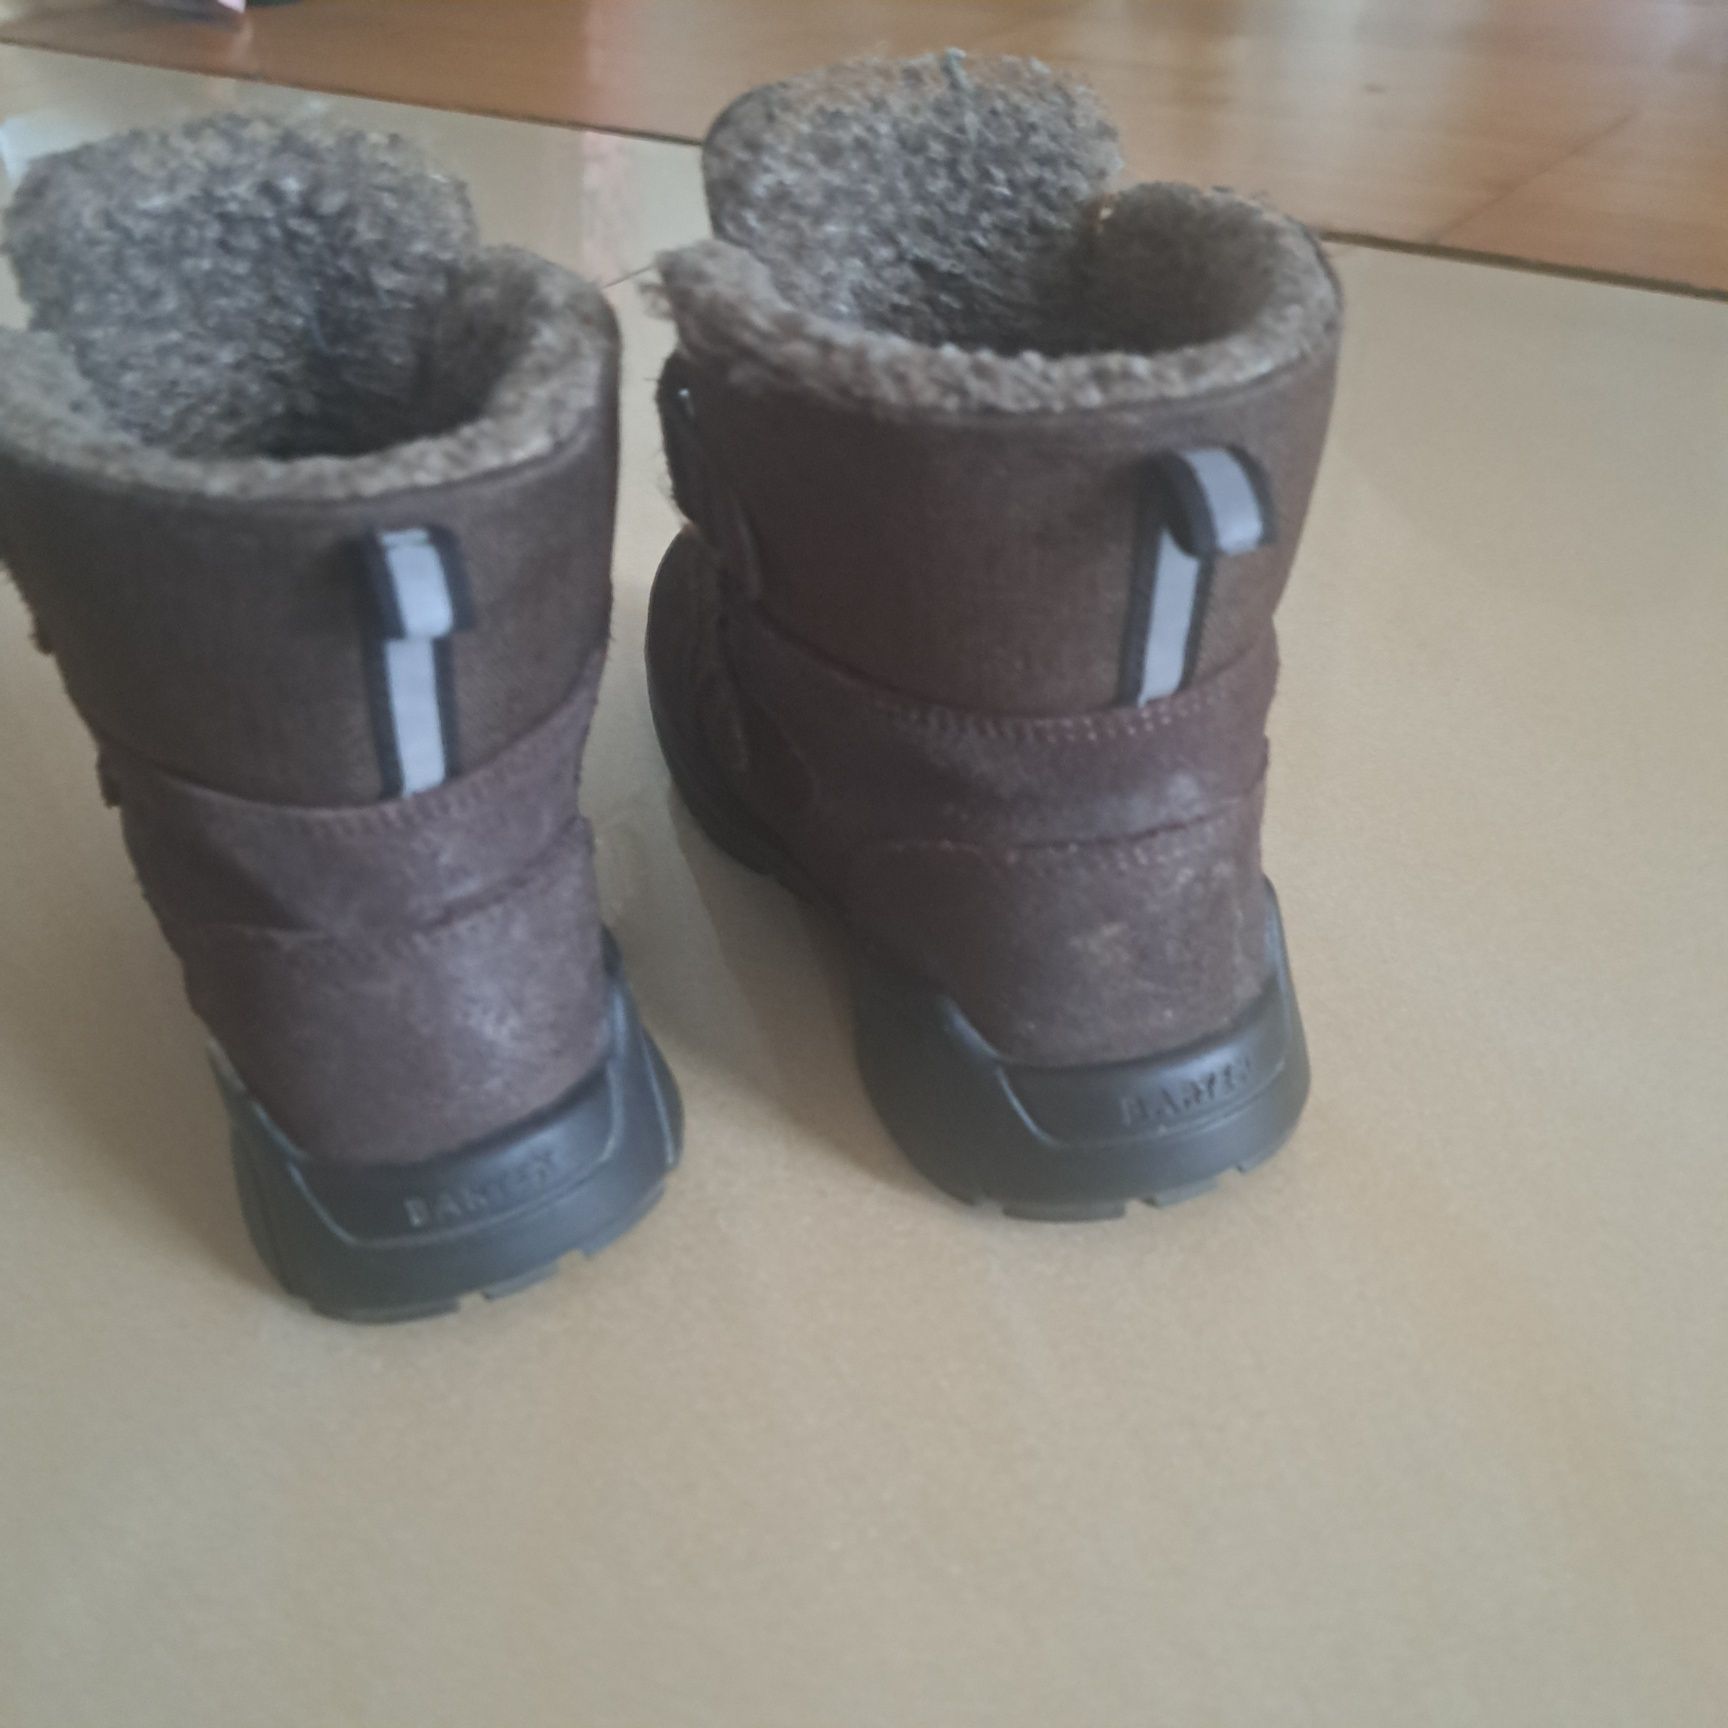 Buty zimowe dla chłopca firmy Bartek